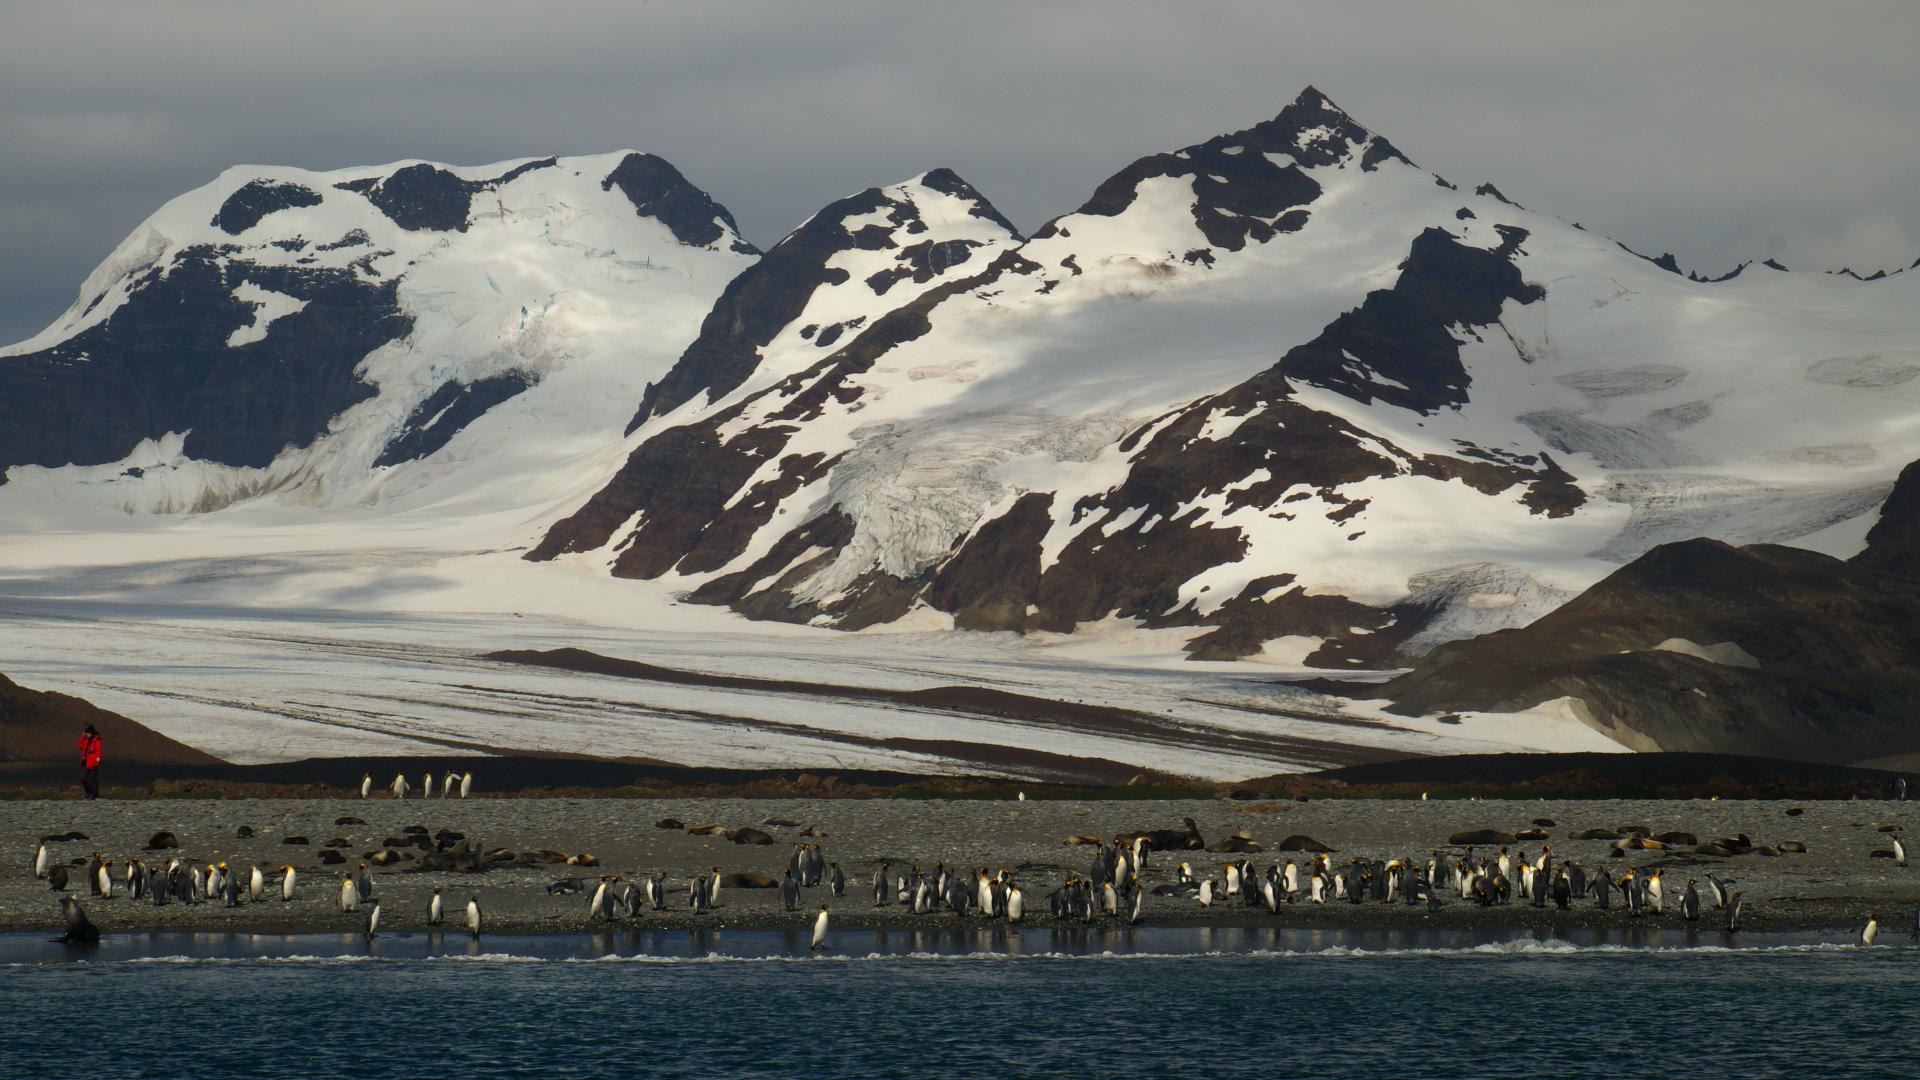 Antarctica, South Georgia and Falklands / Malvinas